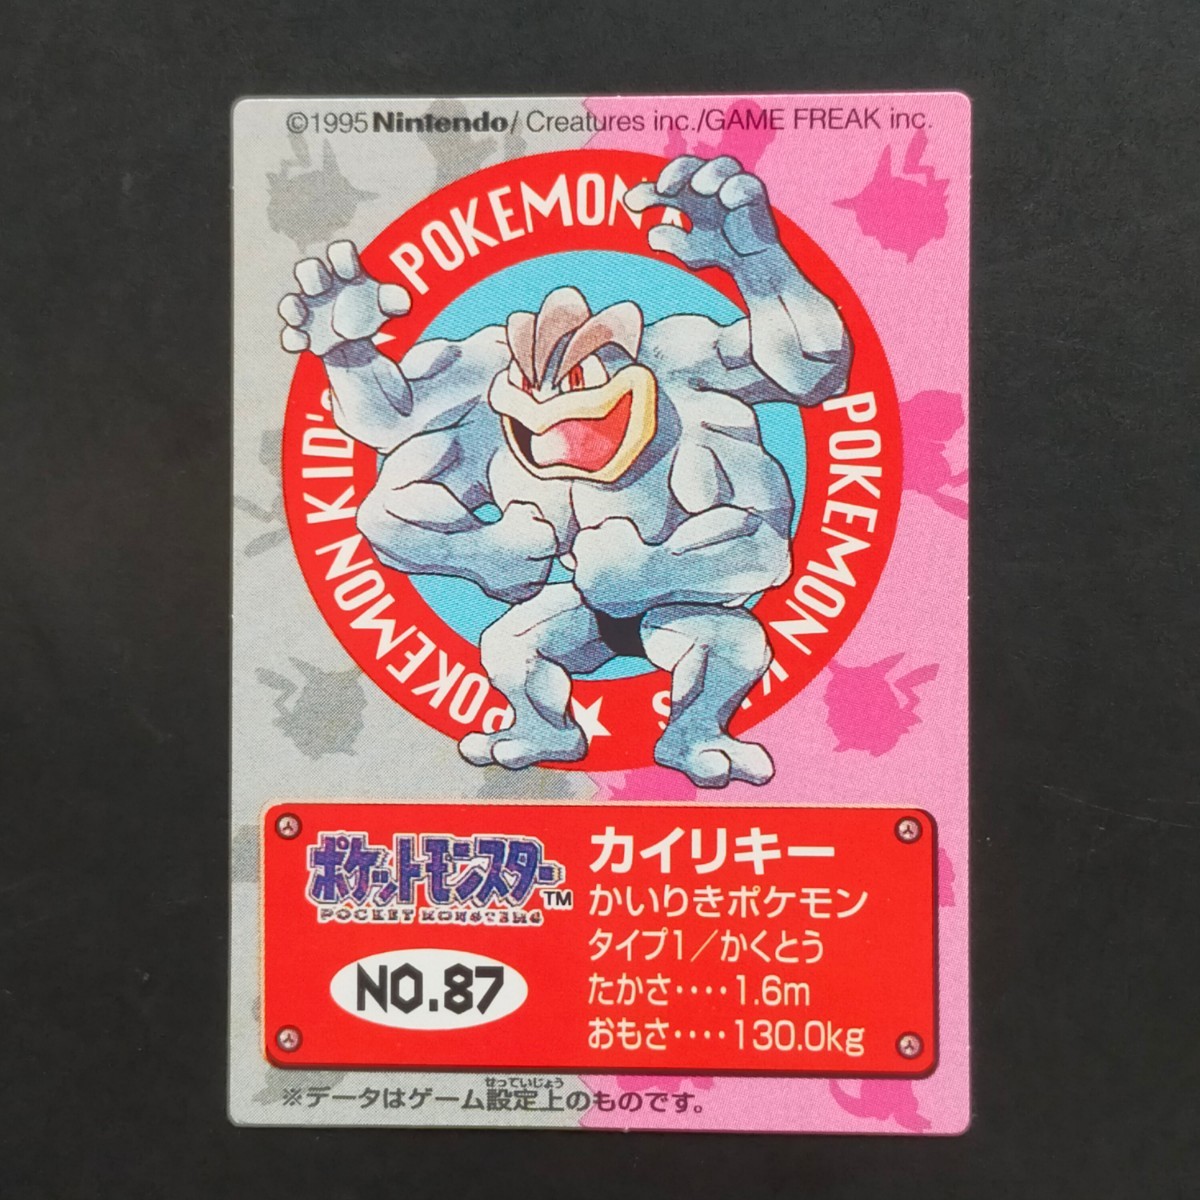 1995年初期 カイリキー ポケモン キッズ カード Nintendo 「ゼニガメ リザードン フシギダネ ヒトカゲ ピカチュウ ヤドラン ミュウ」